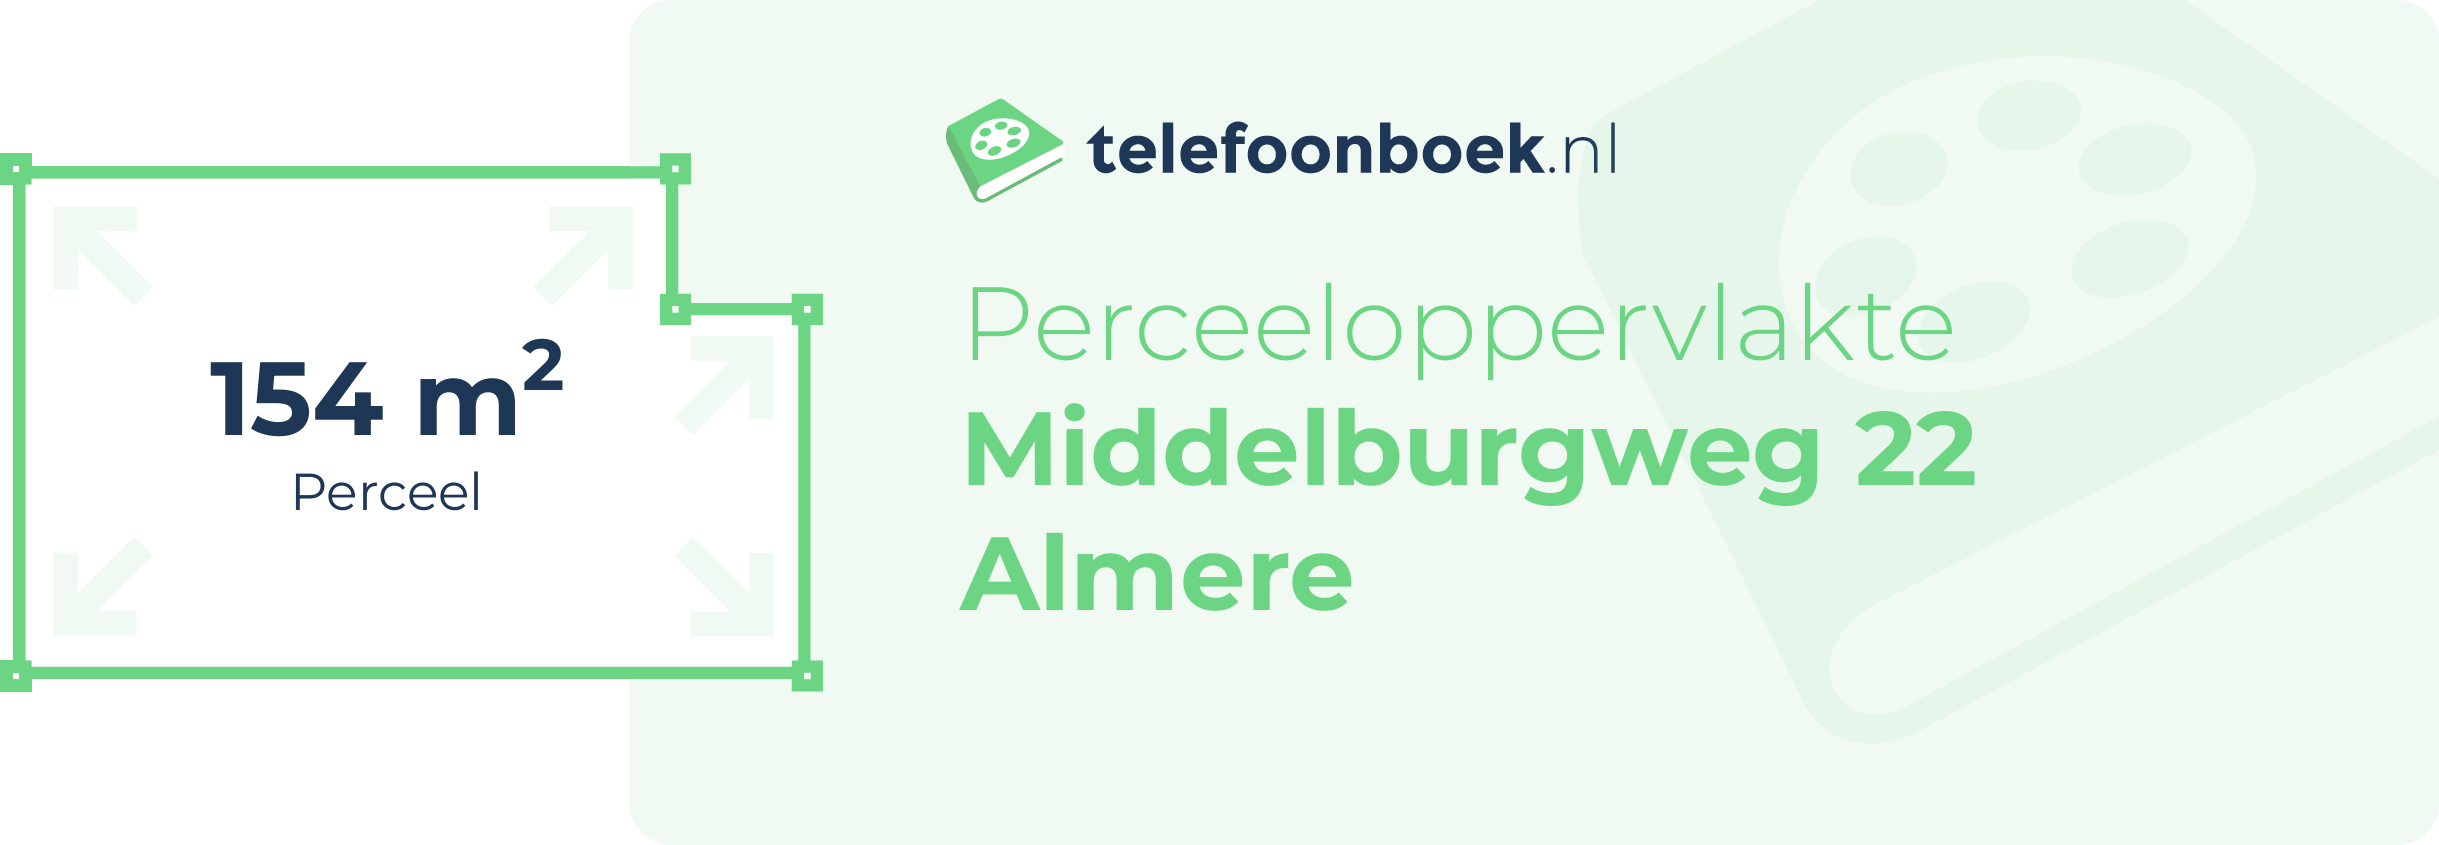 Perceeloppervlakte Middelburgweg 22 Almere